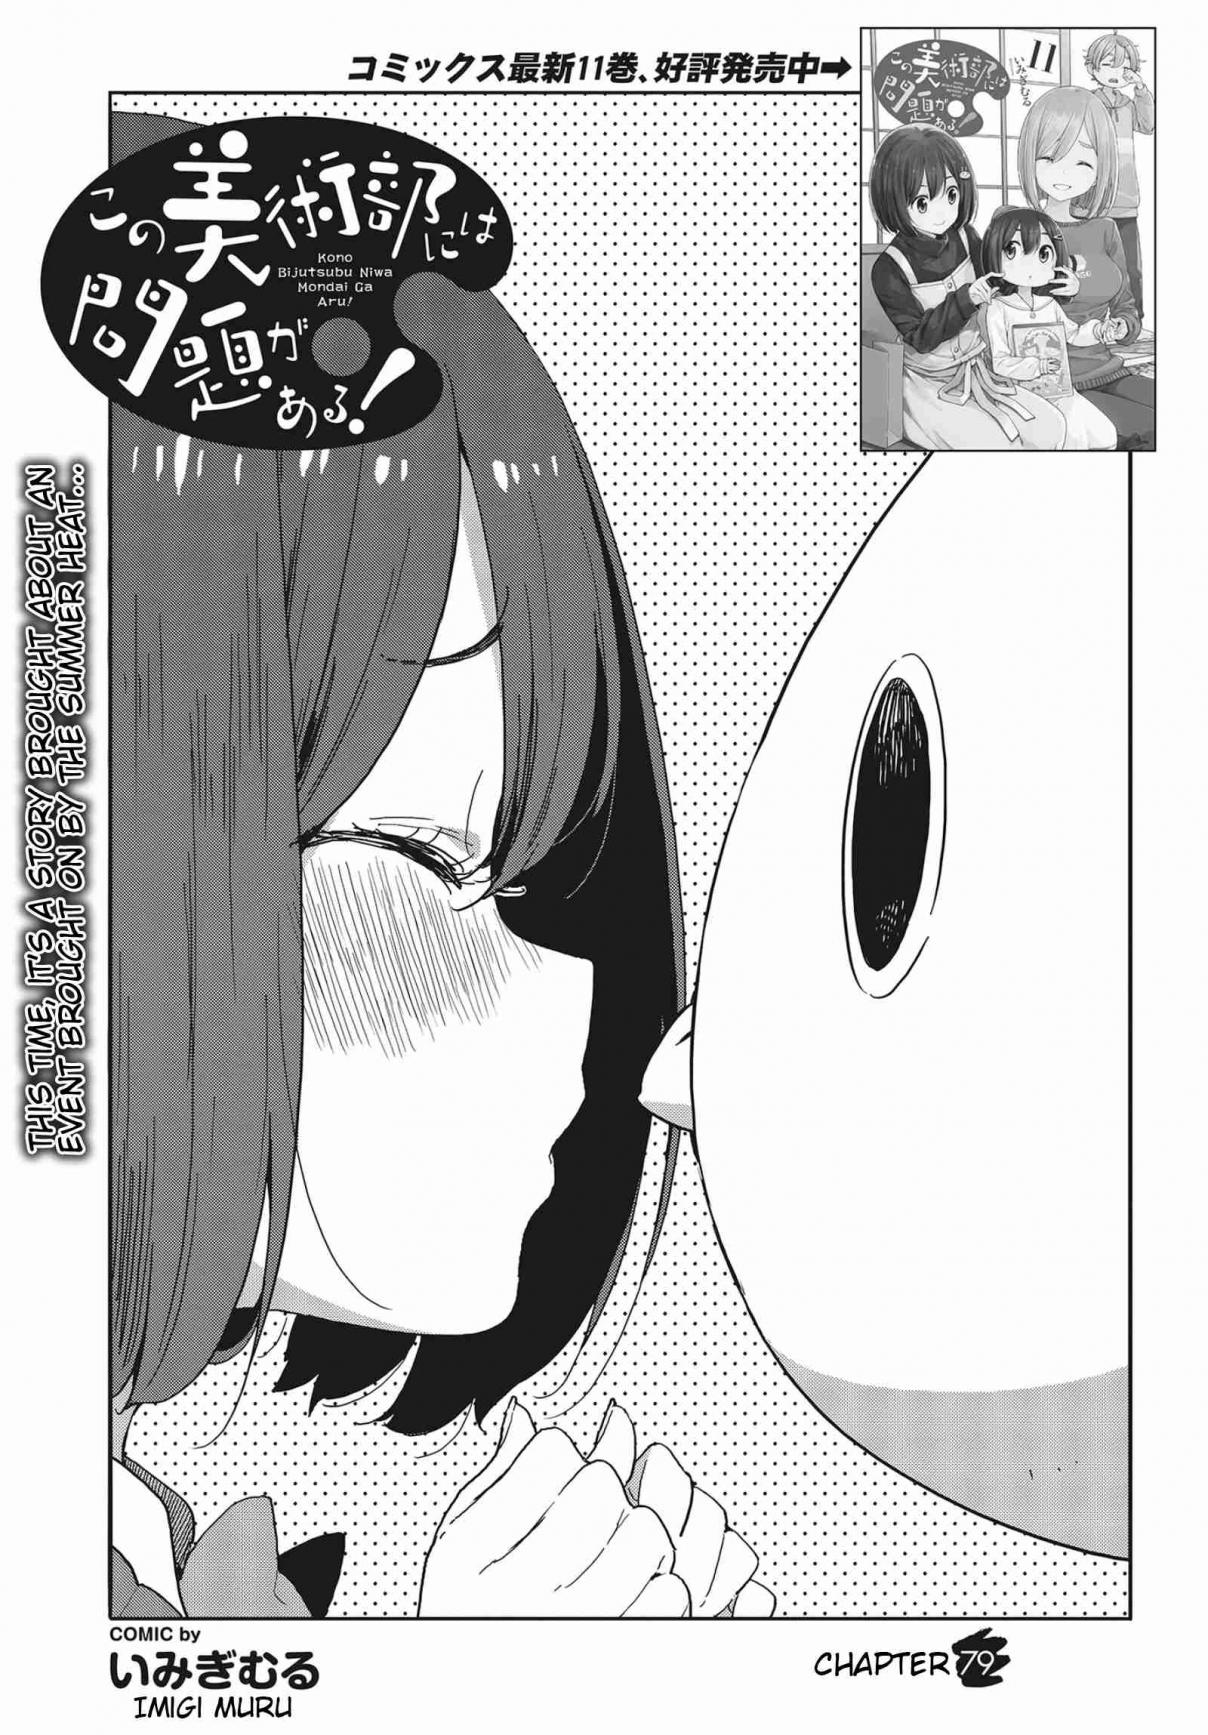 Kono Bijutsubu ni wa Mondai ga Aru! Vol. 12 Ch. 79